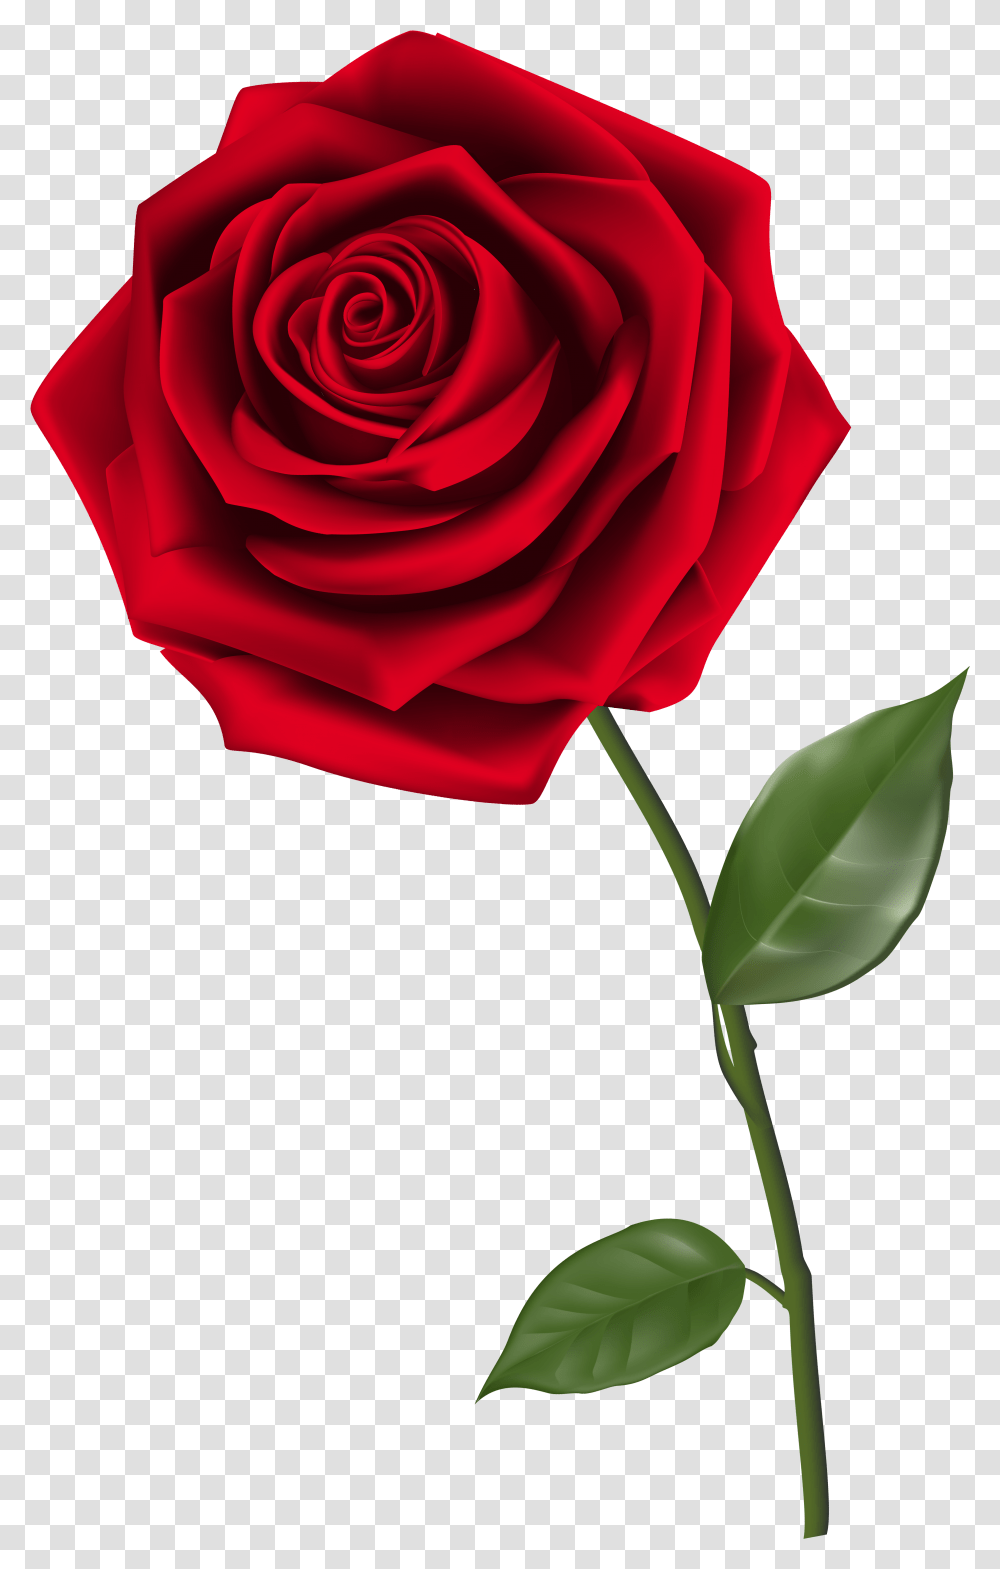 Rose Free Background Red Rose, Plant, Flower, Blossom, Petal Transparent Png